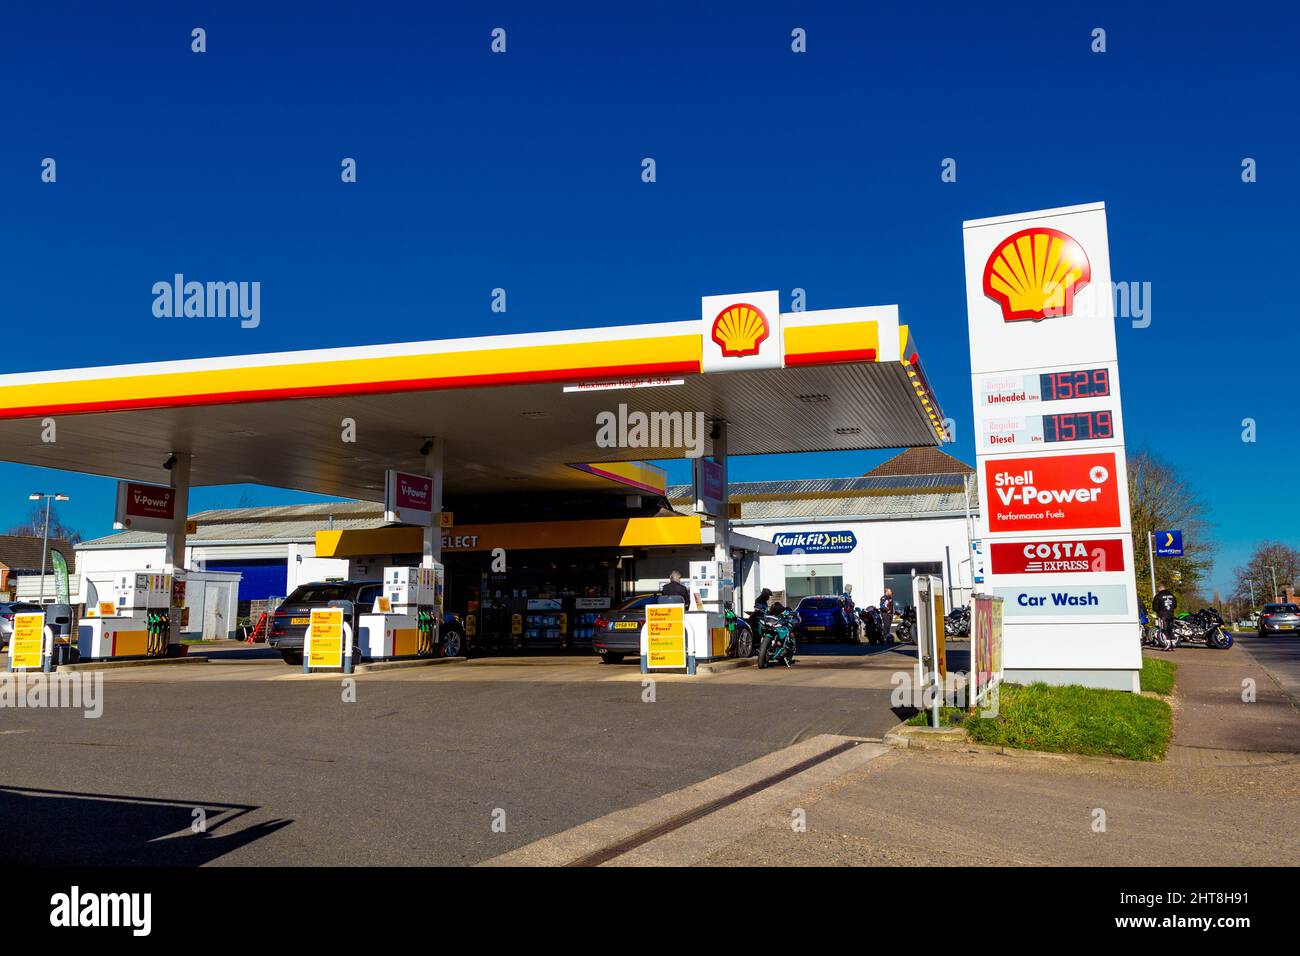 Shell oil company petrol station Stock Photo